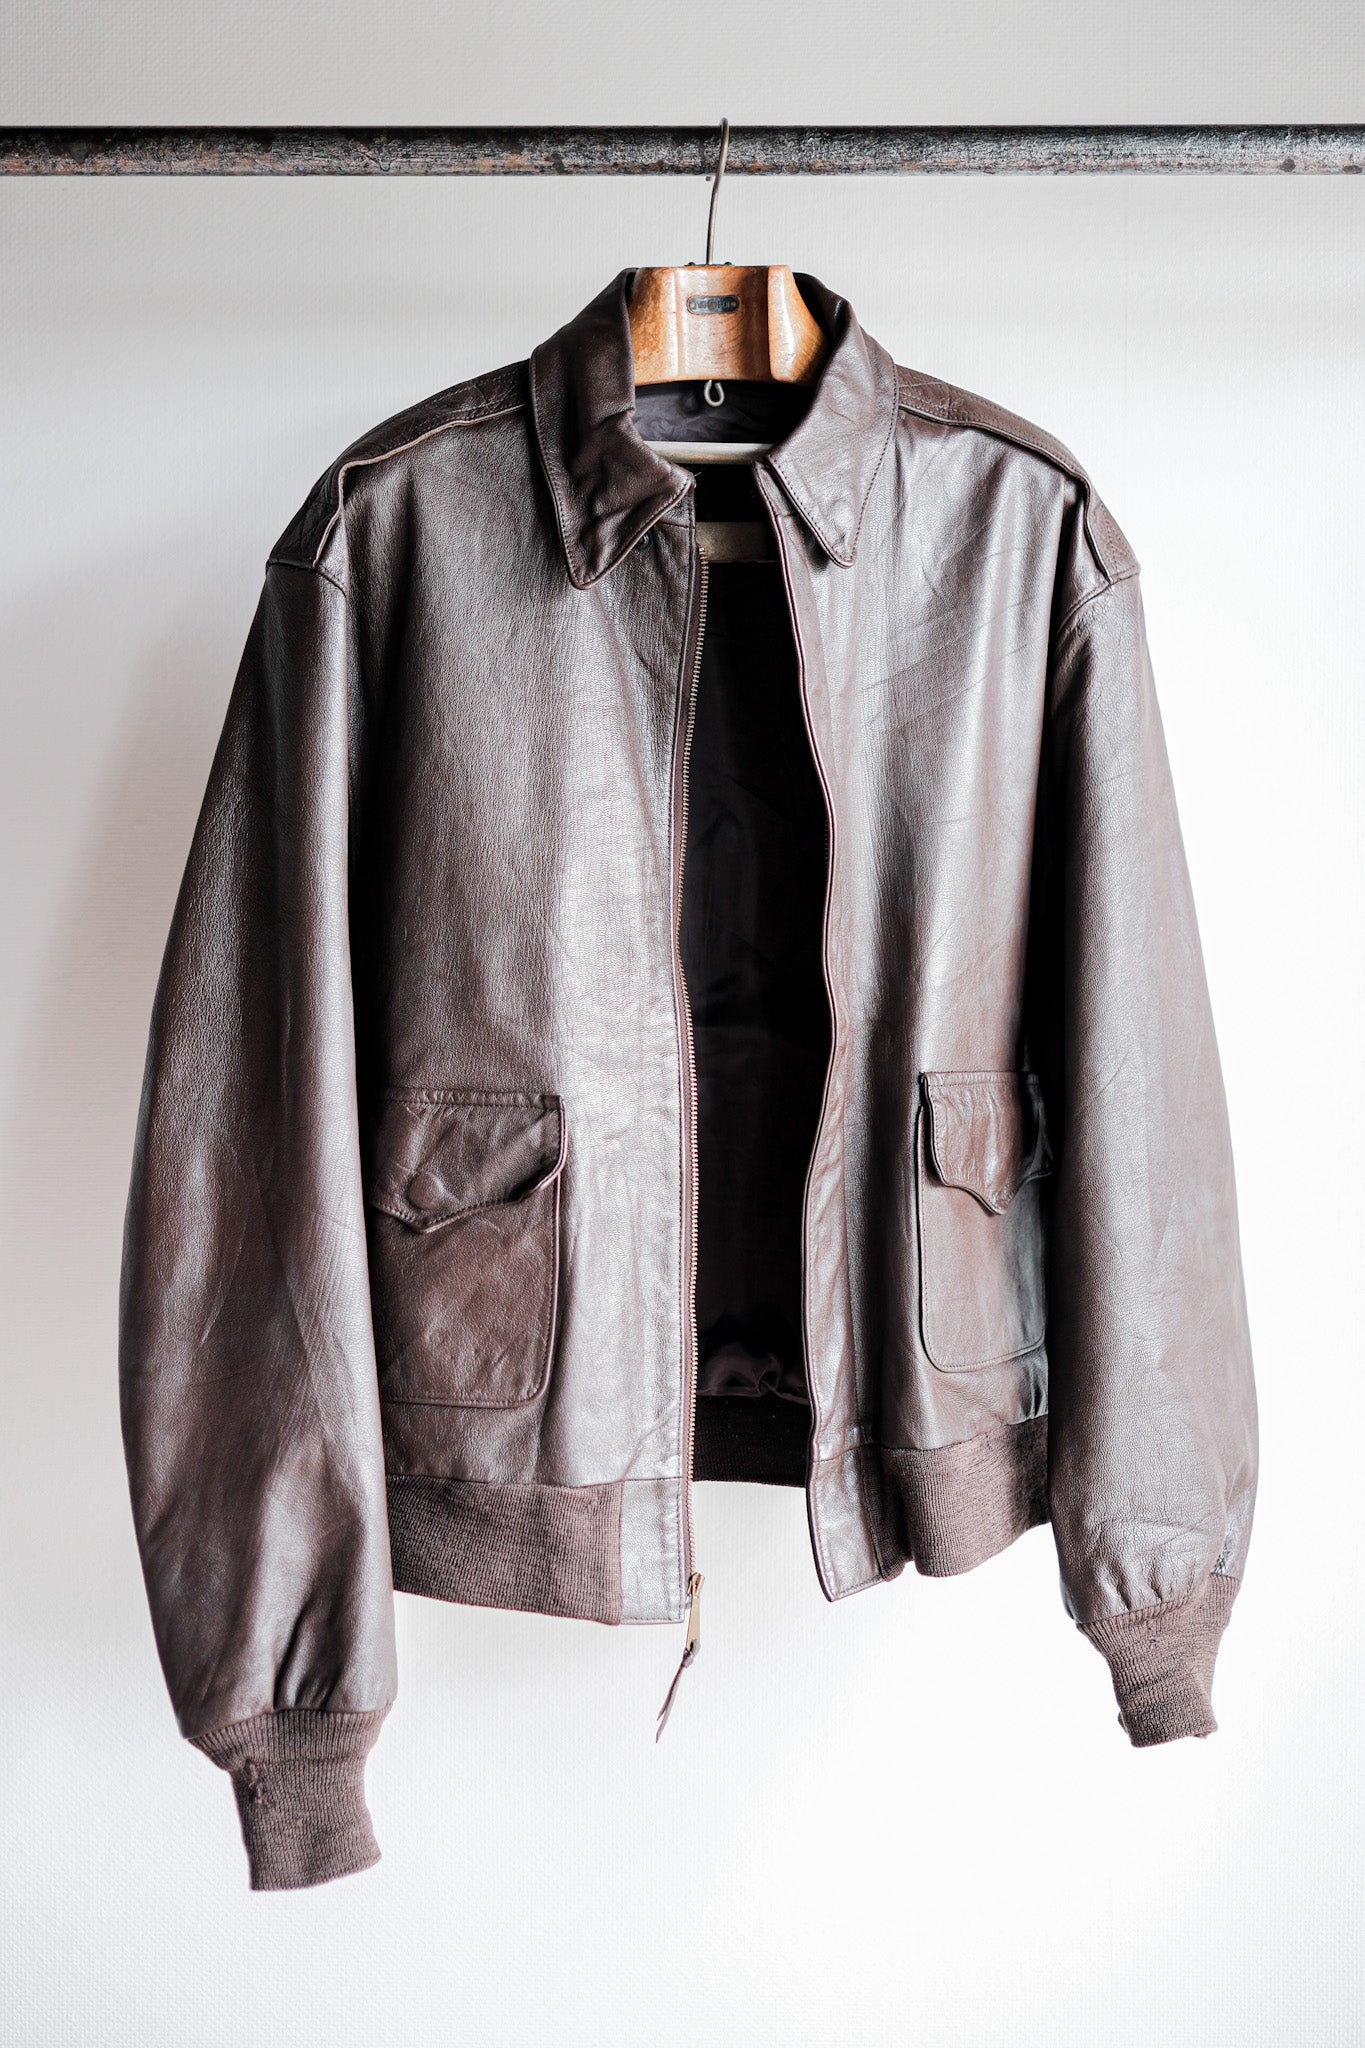 [〜80年代] Willis＆Geiger A-2型皮革飛行夾克尺寸。44“在美國製造”。